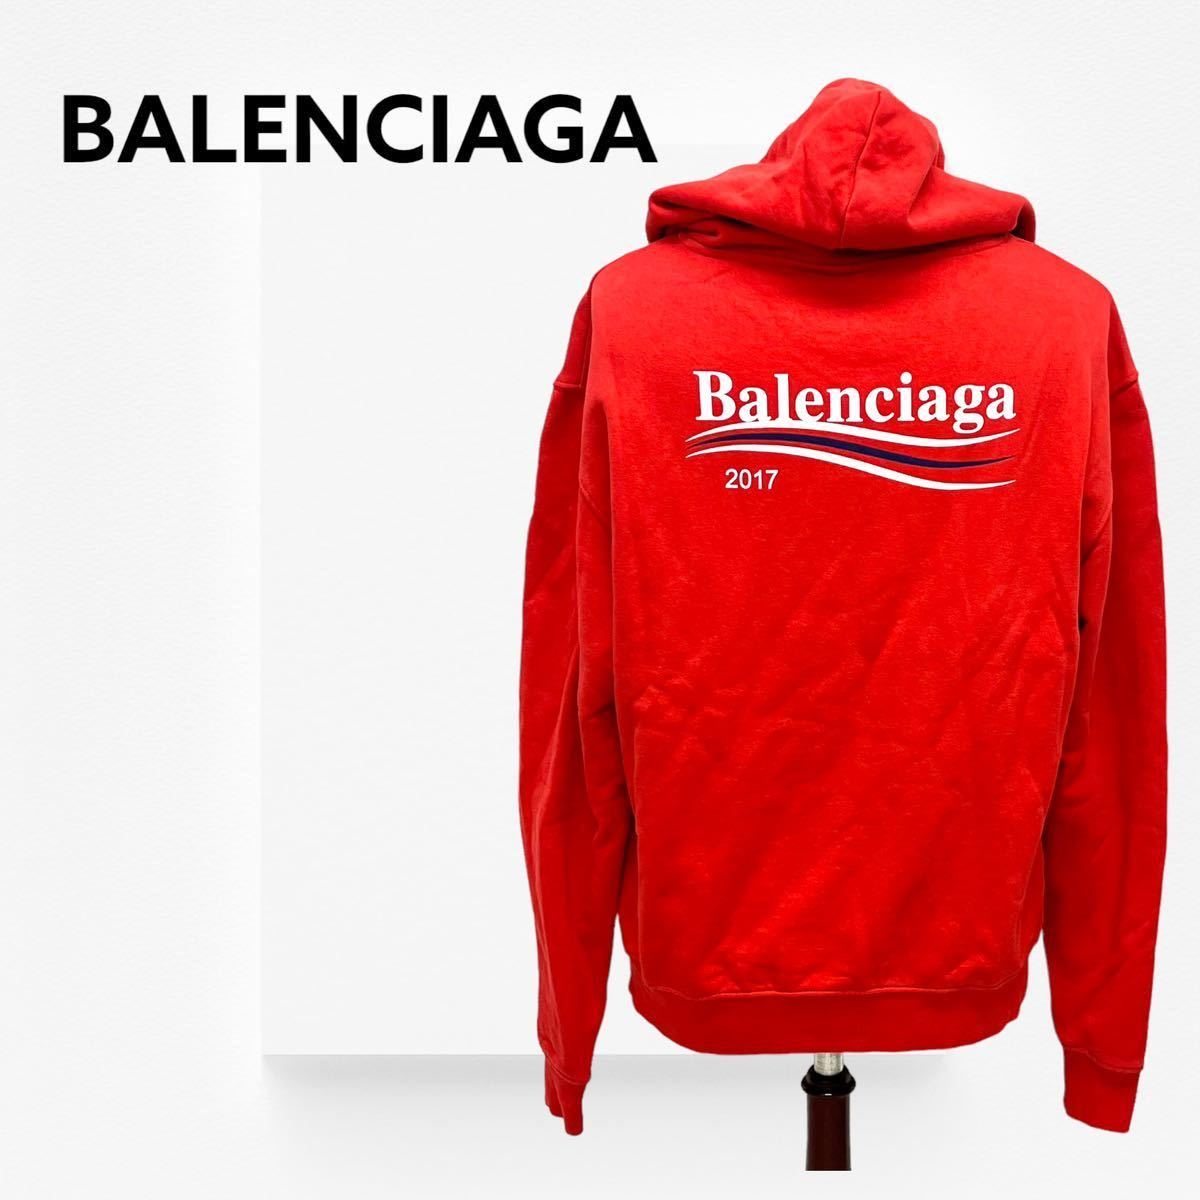 BALENCIAGA バレンシアガ 17AW キャンペーンロゴ バックプリント プルオーバー パーカー メンズ 486105 TWK40